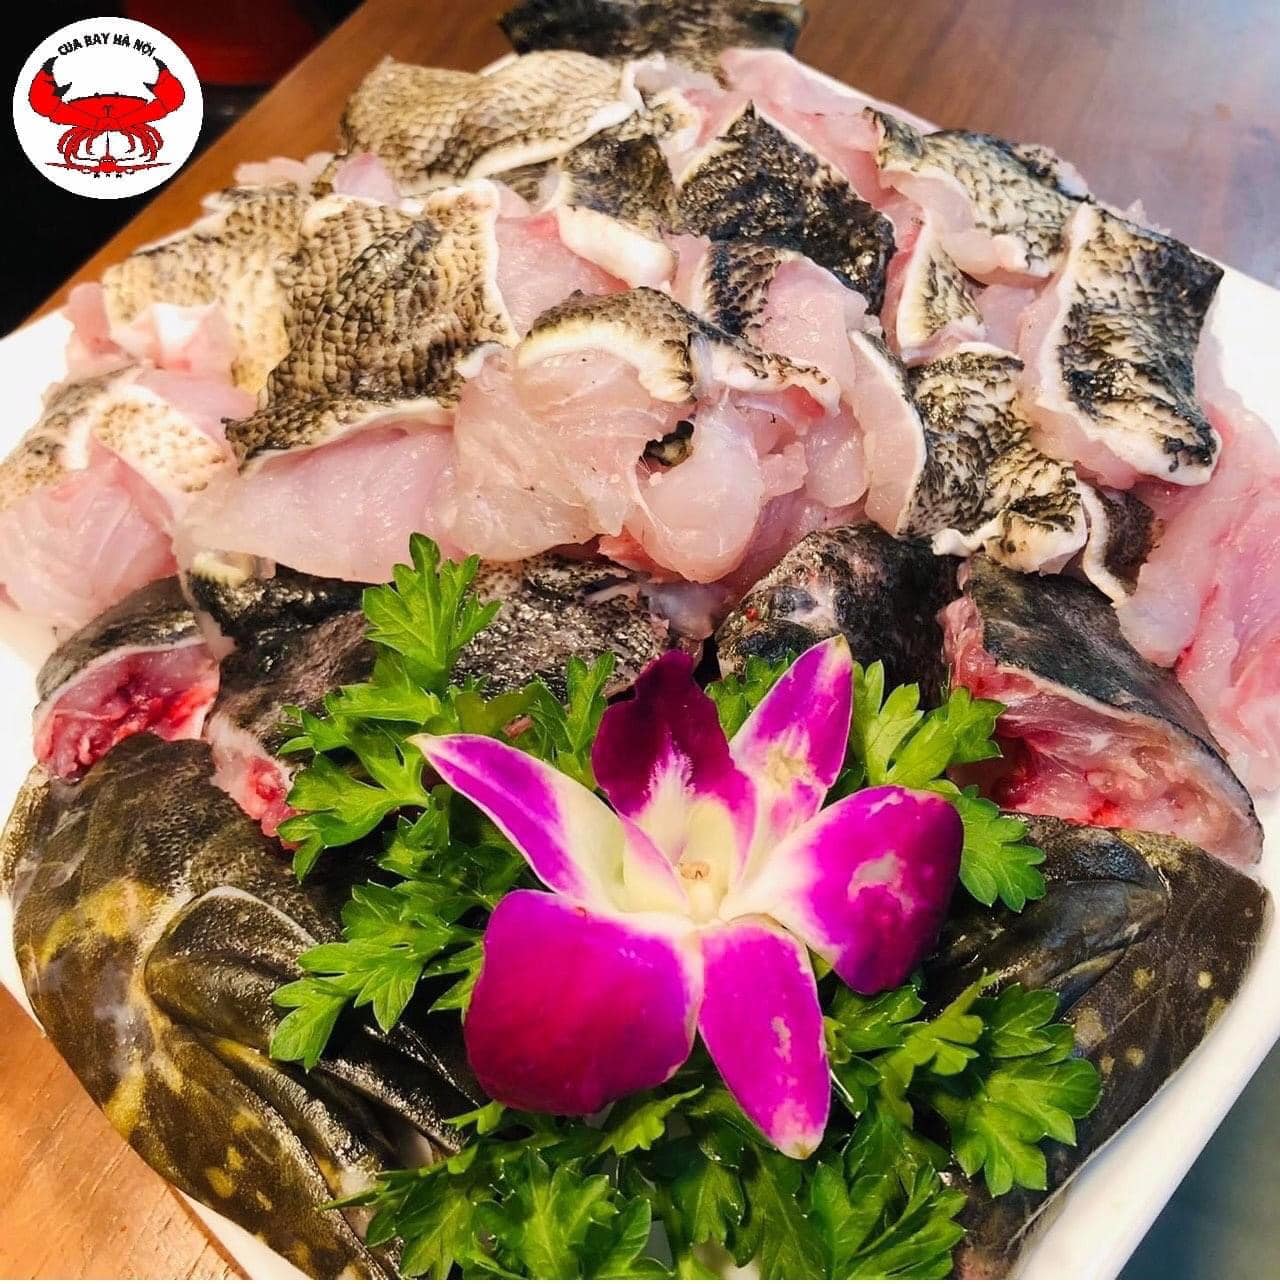 Nhà hàng Hải sản Cua Bay – Thực đơn chất lượng với các loại hải sản